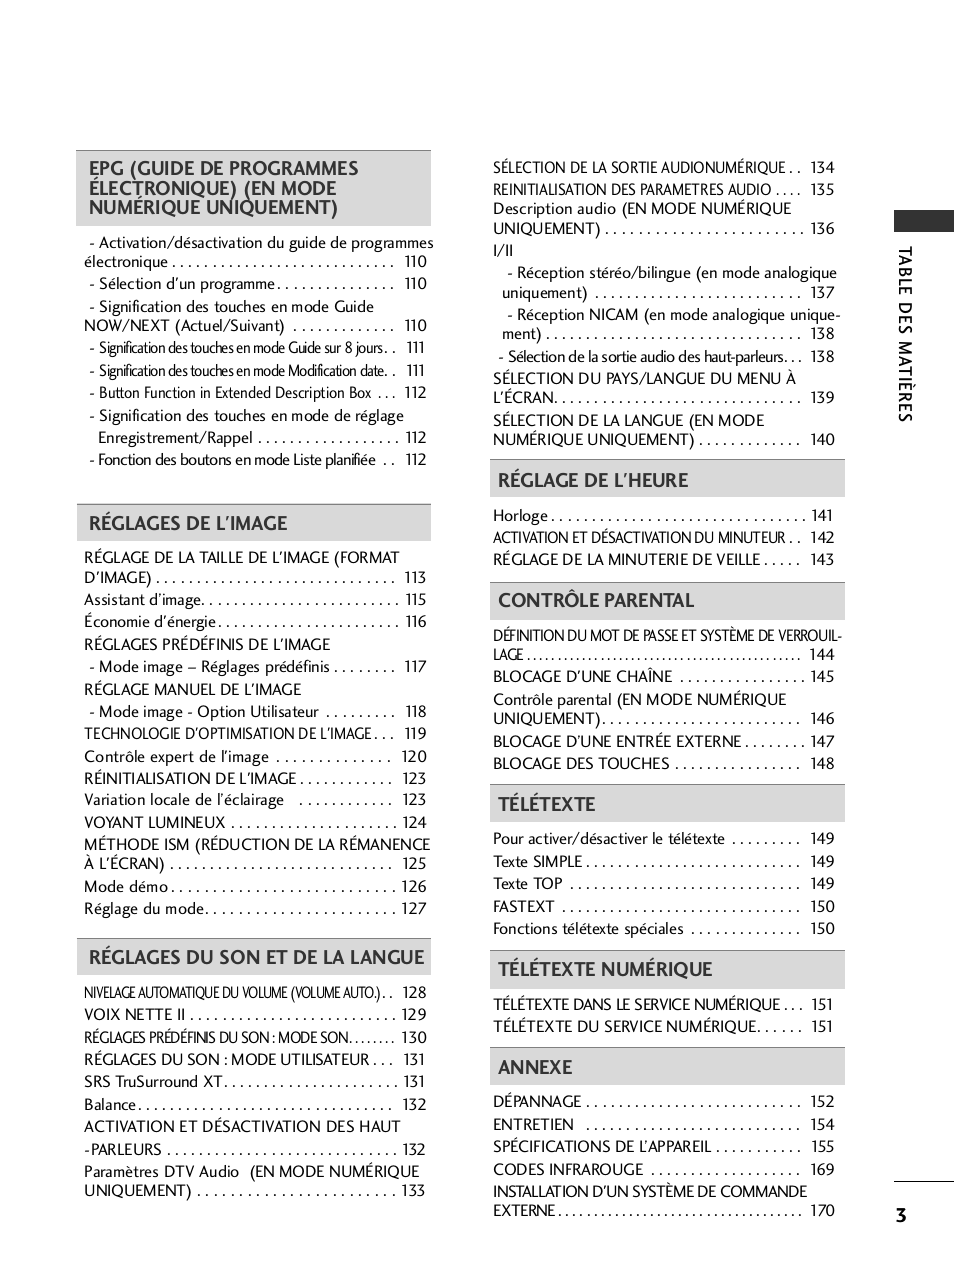 LG 32LH40 Manuel d'utilisation | Page 5 / 180